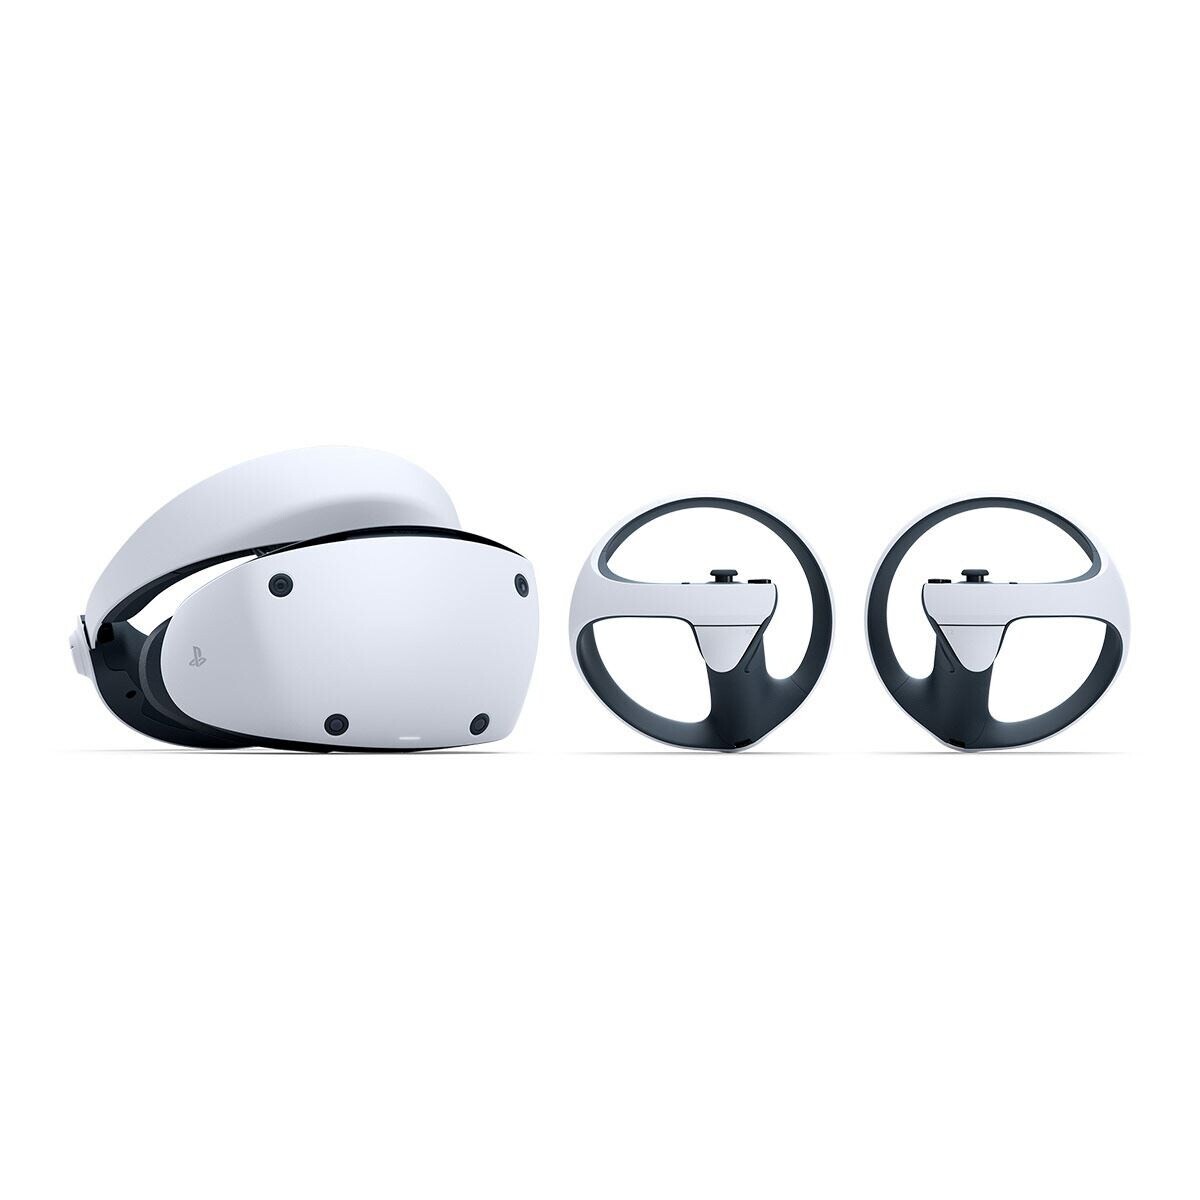 Bundle Realidad Virtual PlayStation VR 2 Horizon Call of the Mountain Edition para PS5 Blanco